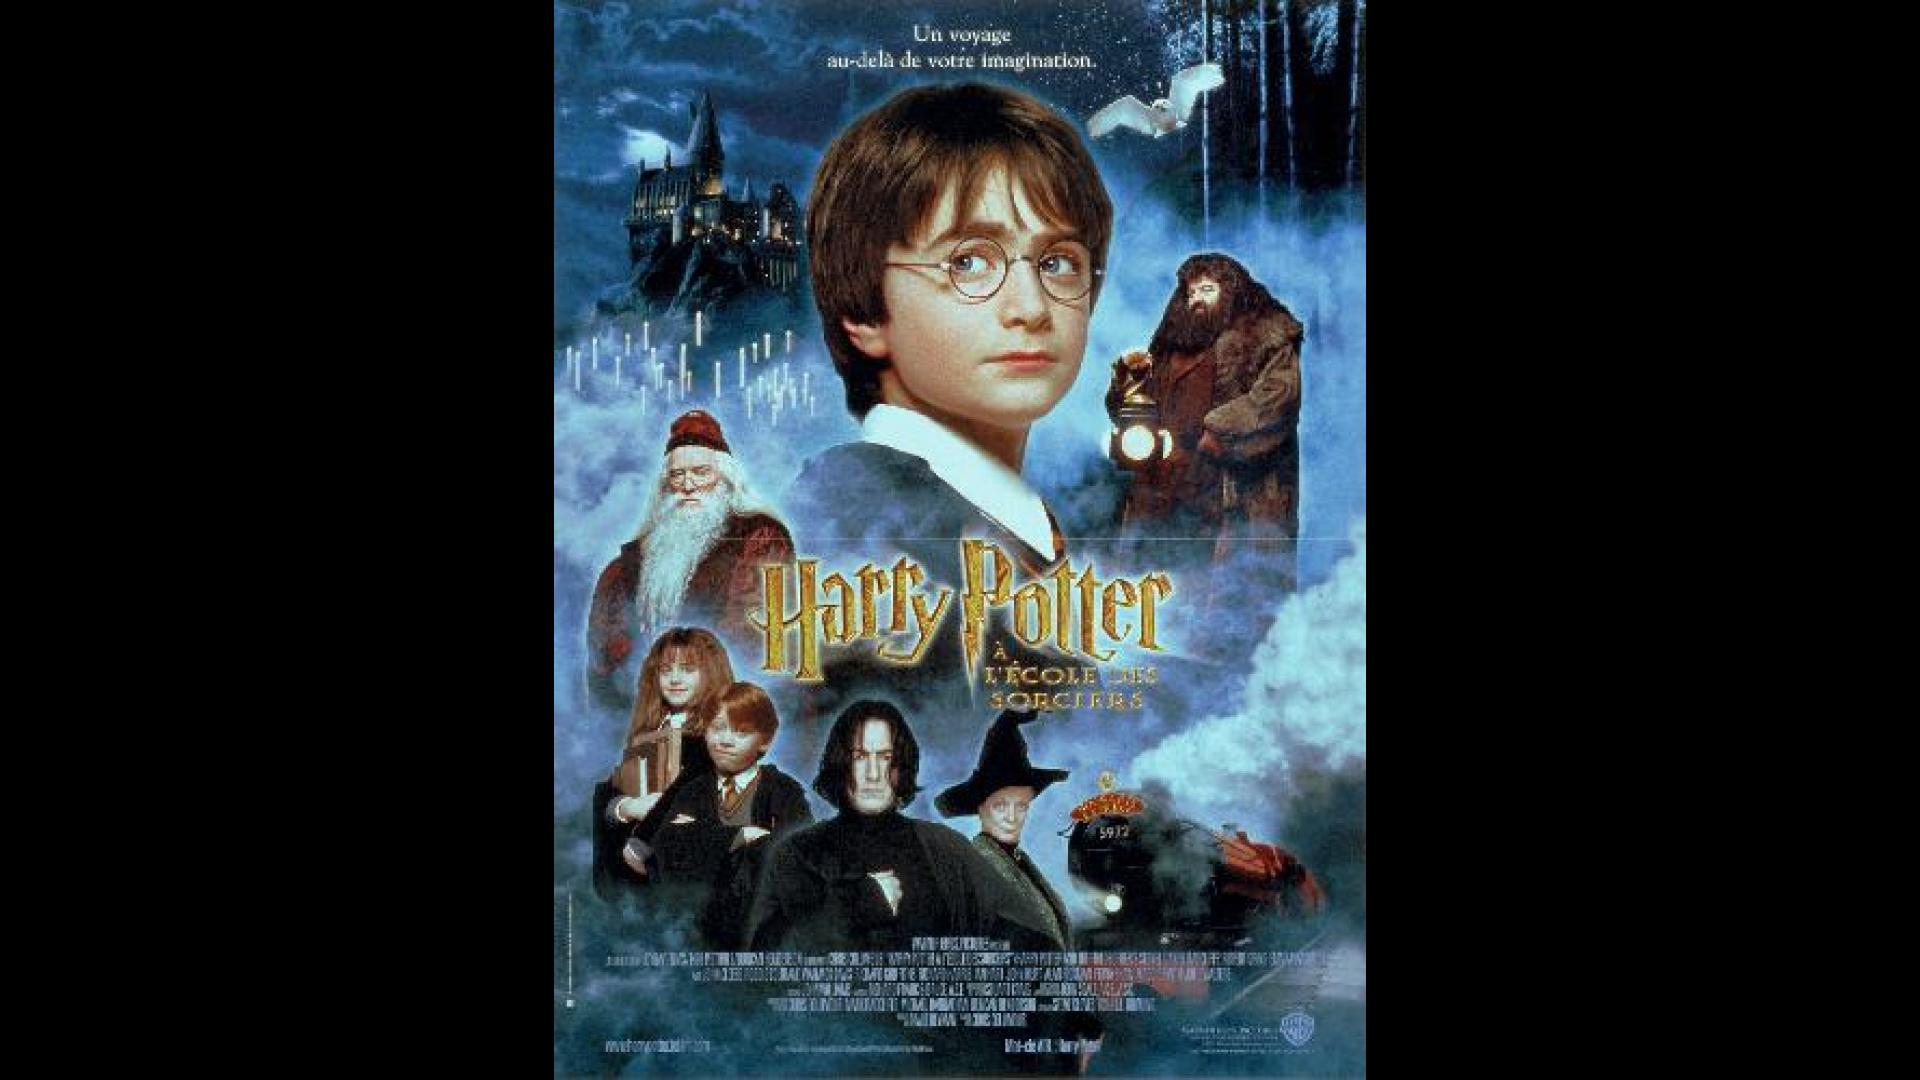 Harry Potter à l'école des sorciers (2001), un film de Chris Columbus